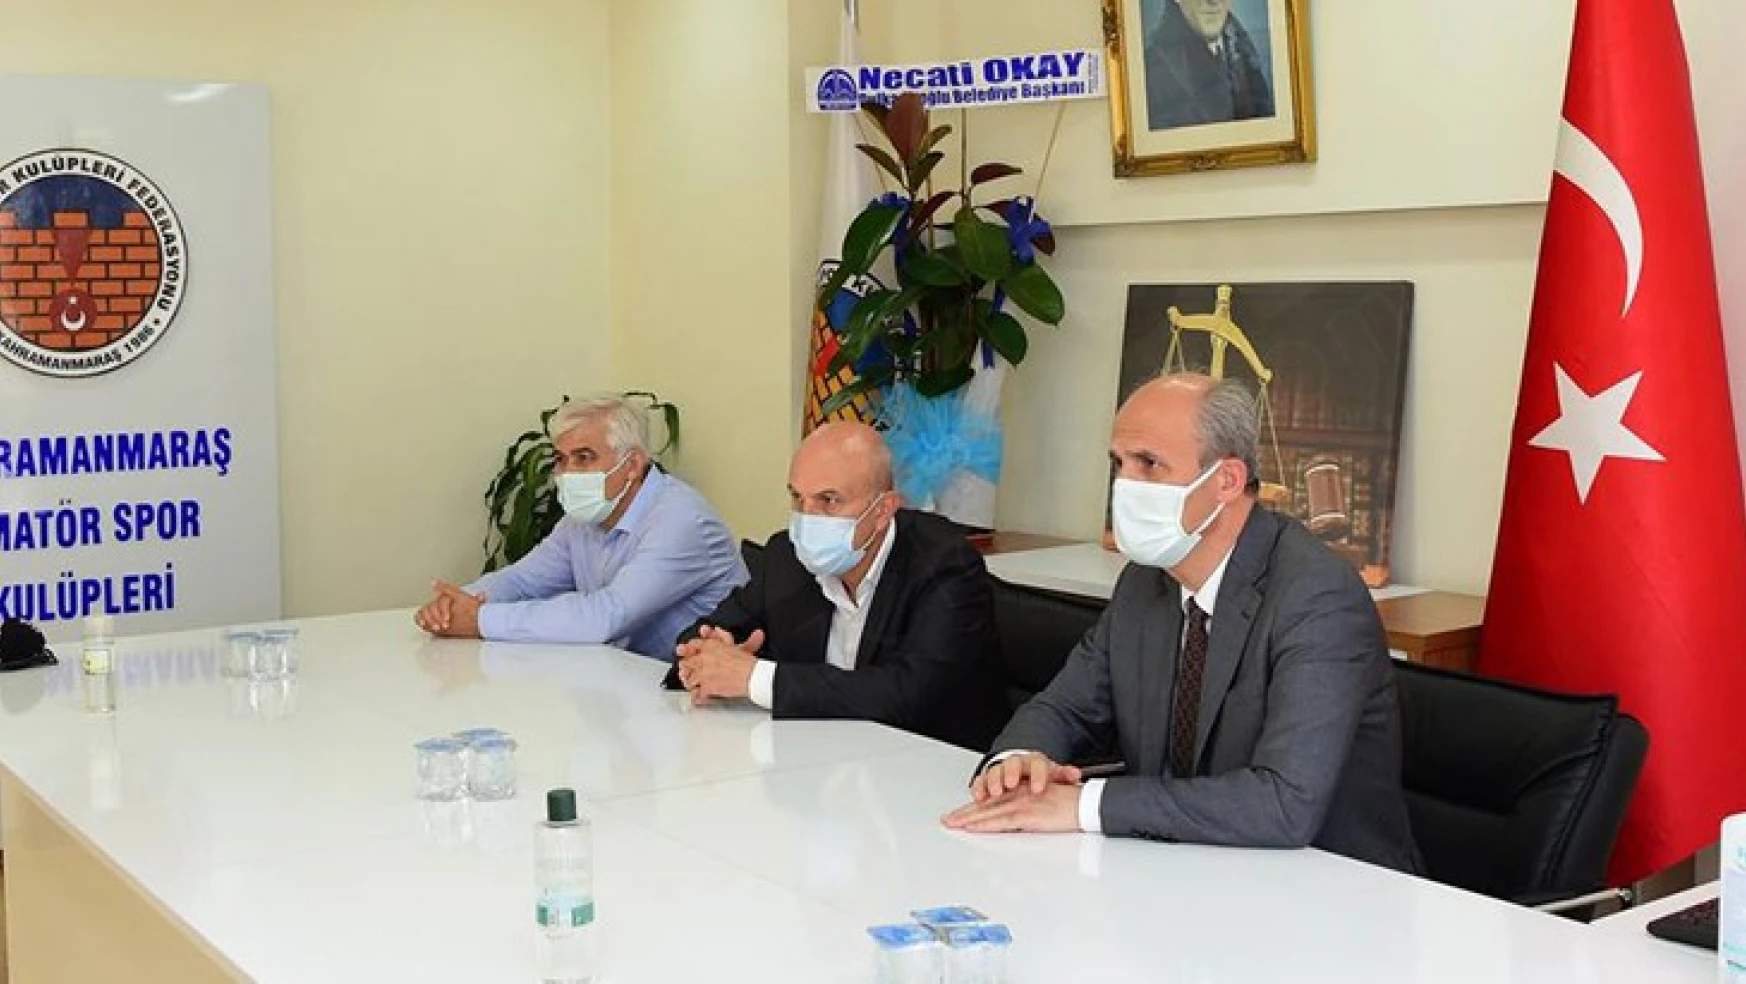 Dulkadiroğlu Belediye Başkanı Necati Okay'dan ASKF'ye ziyaret